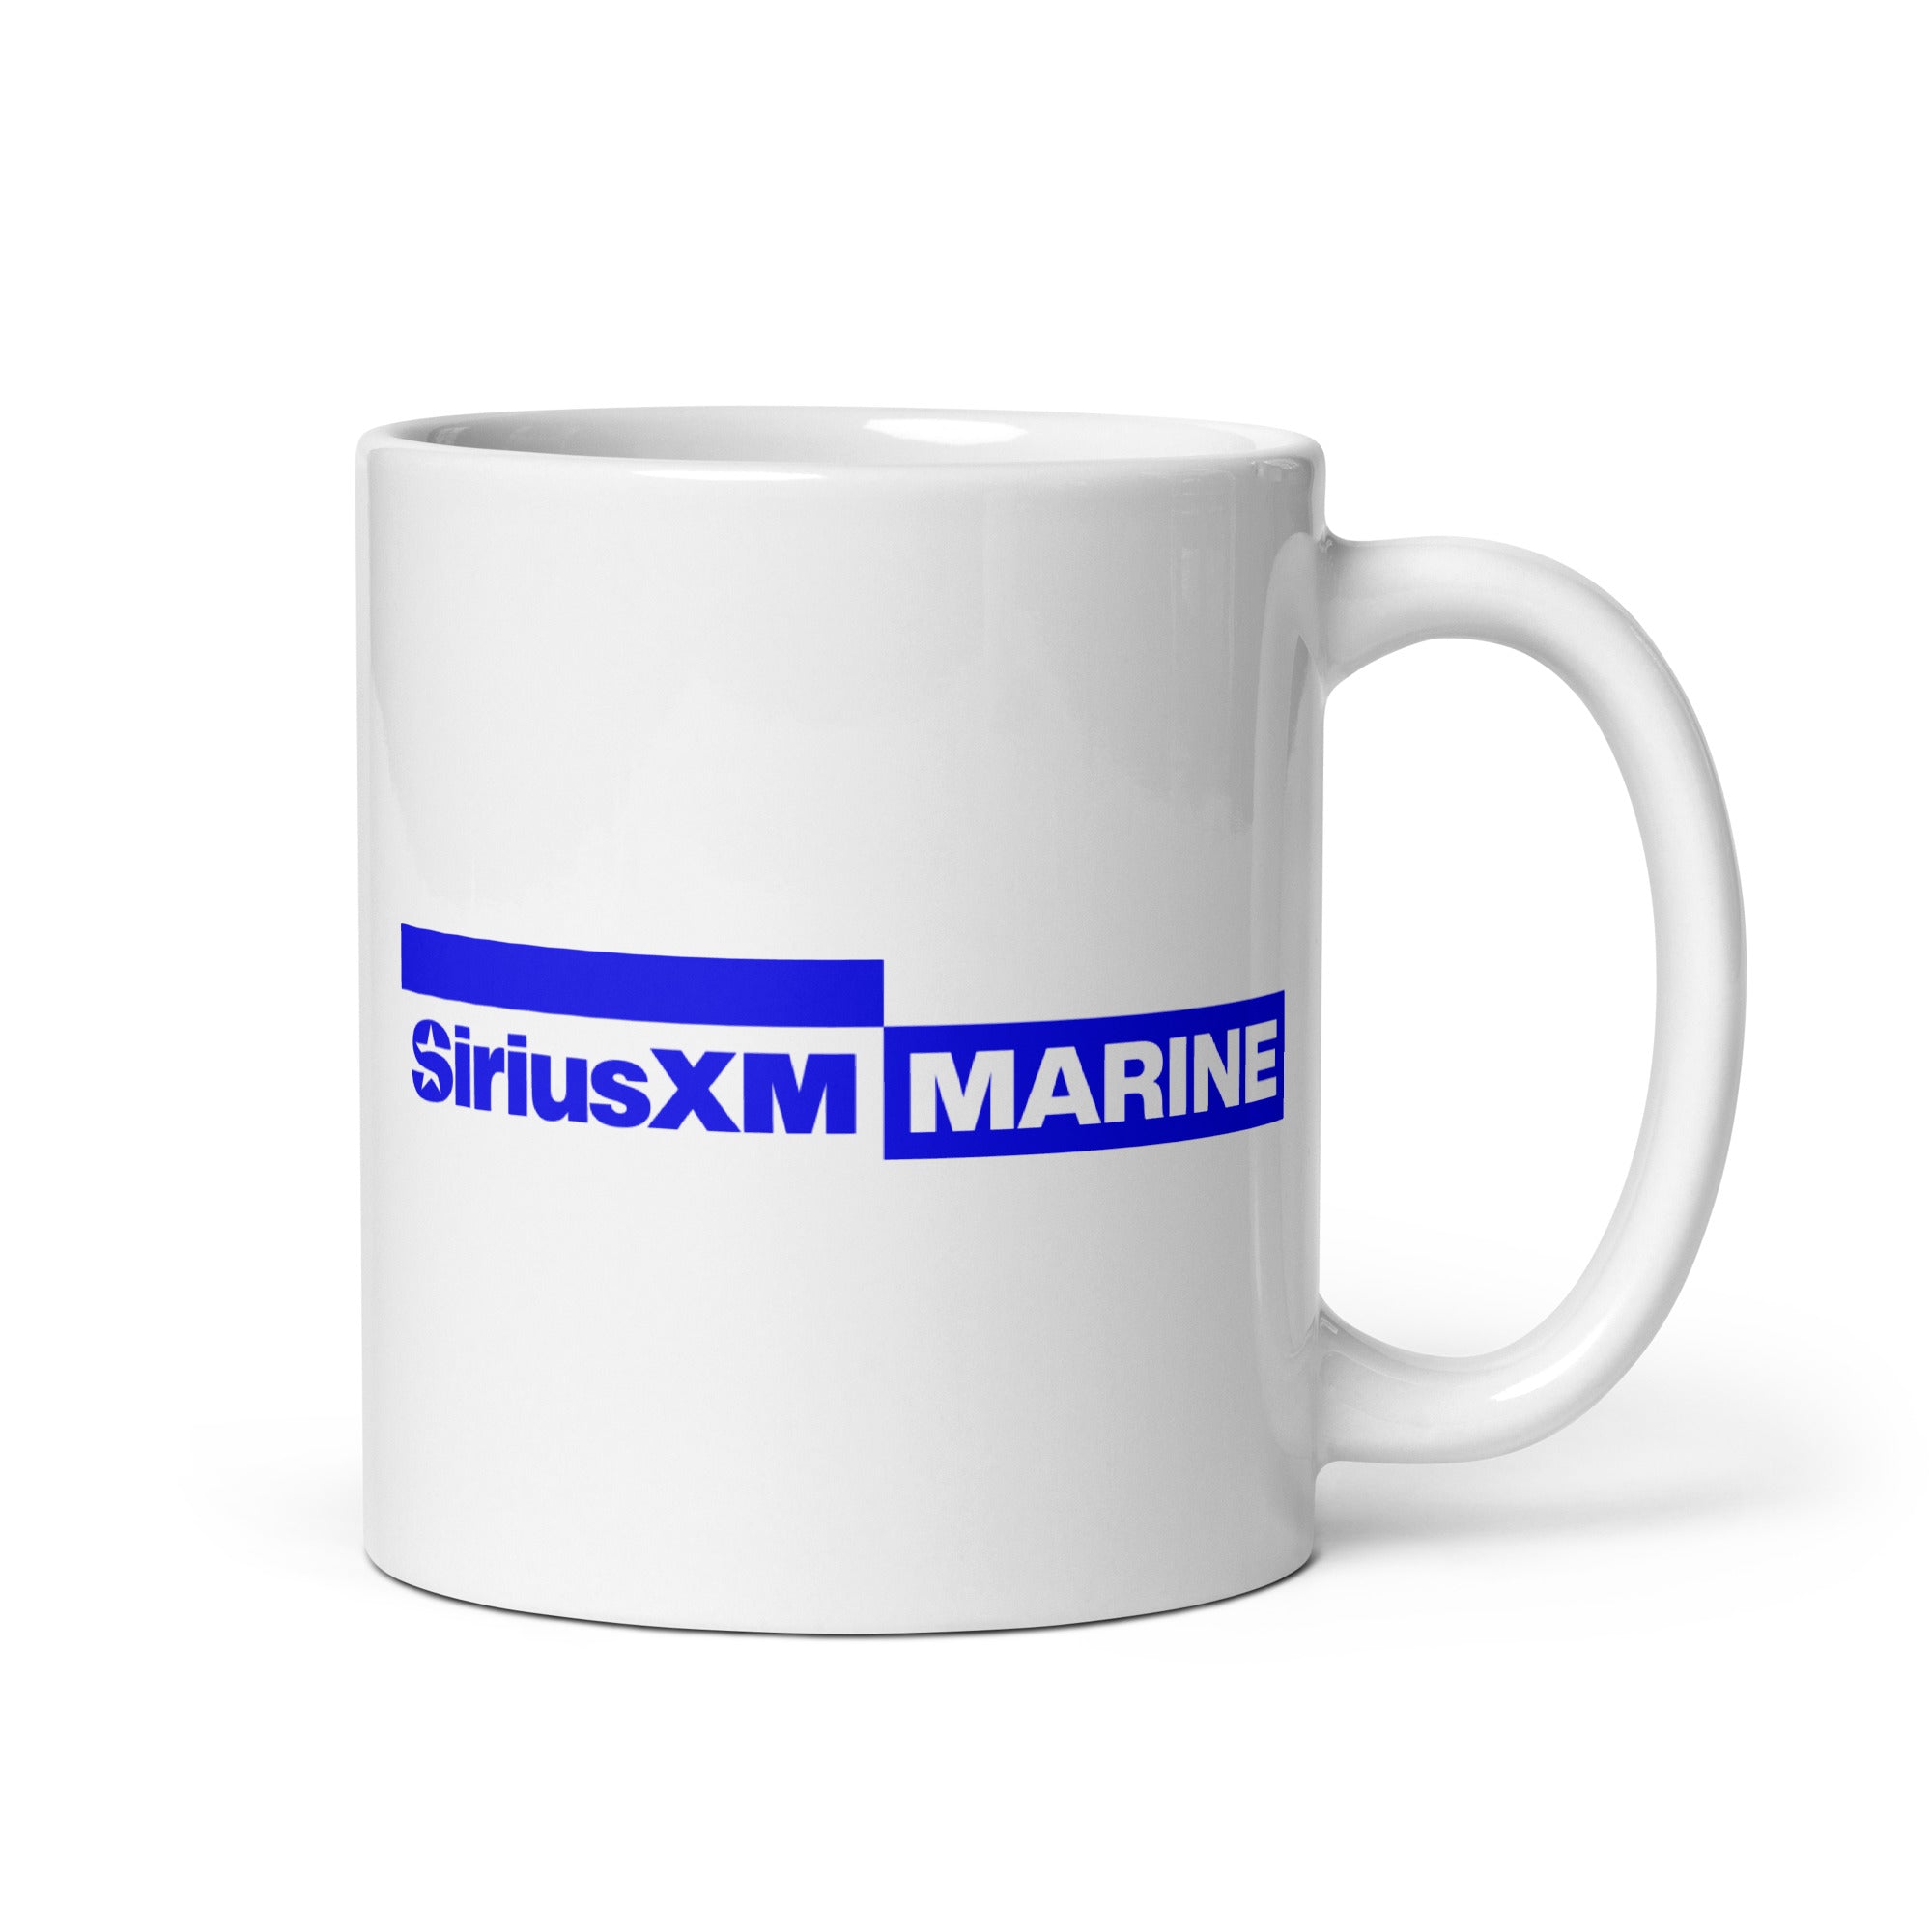 SiriusXM Marine: Mug